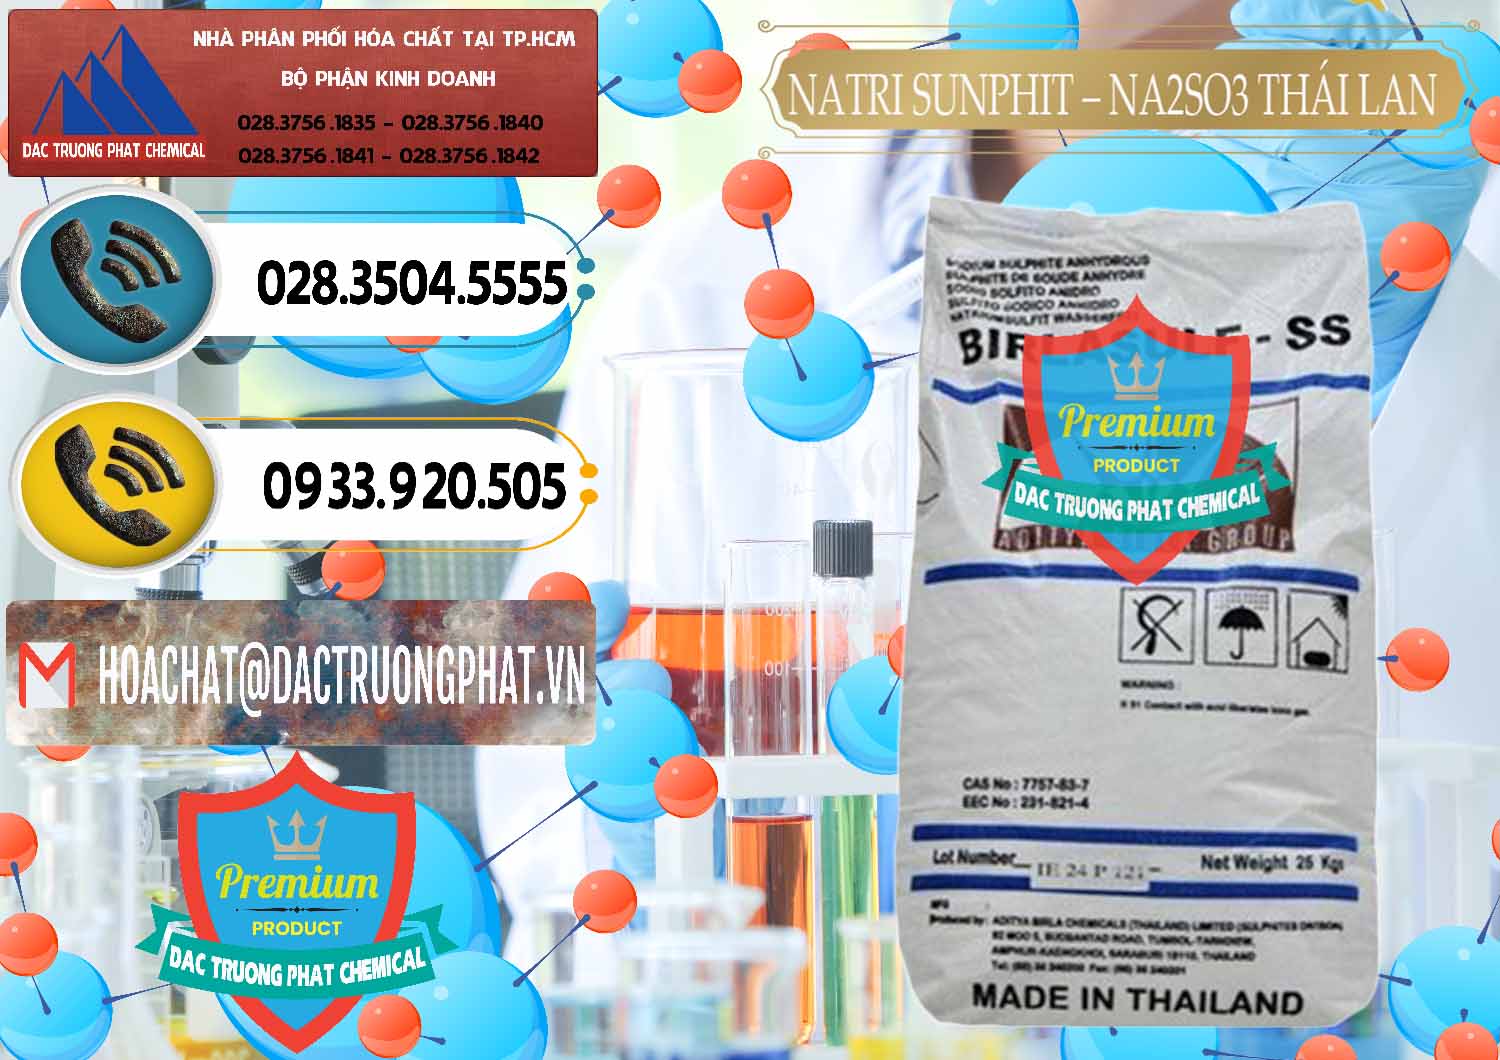 Nơi chuyên cung ứng - bán Natri Sunphit - NA2SO3 Thái Lan - 0105 - Nhà cung ứng - phân phối hóa chất tại TP.HCM - hoachatdetnhuom.vn